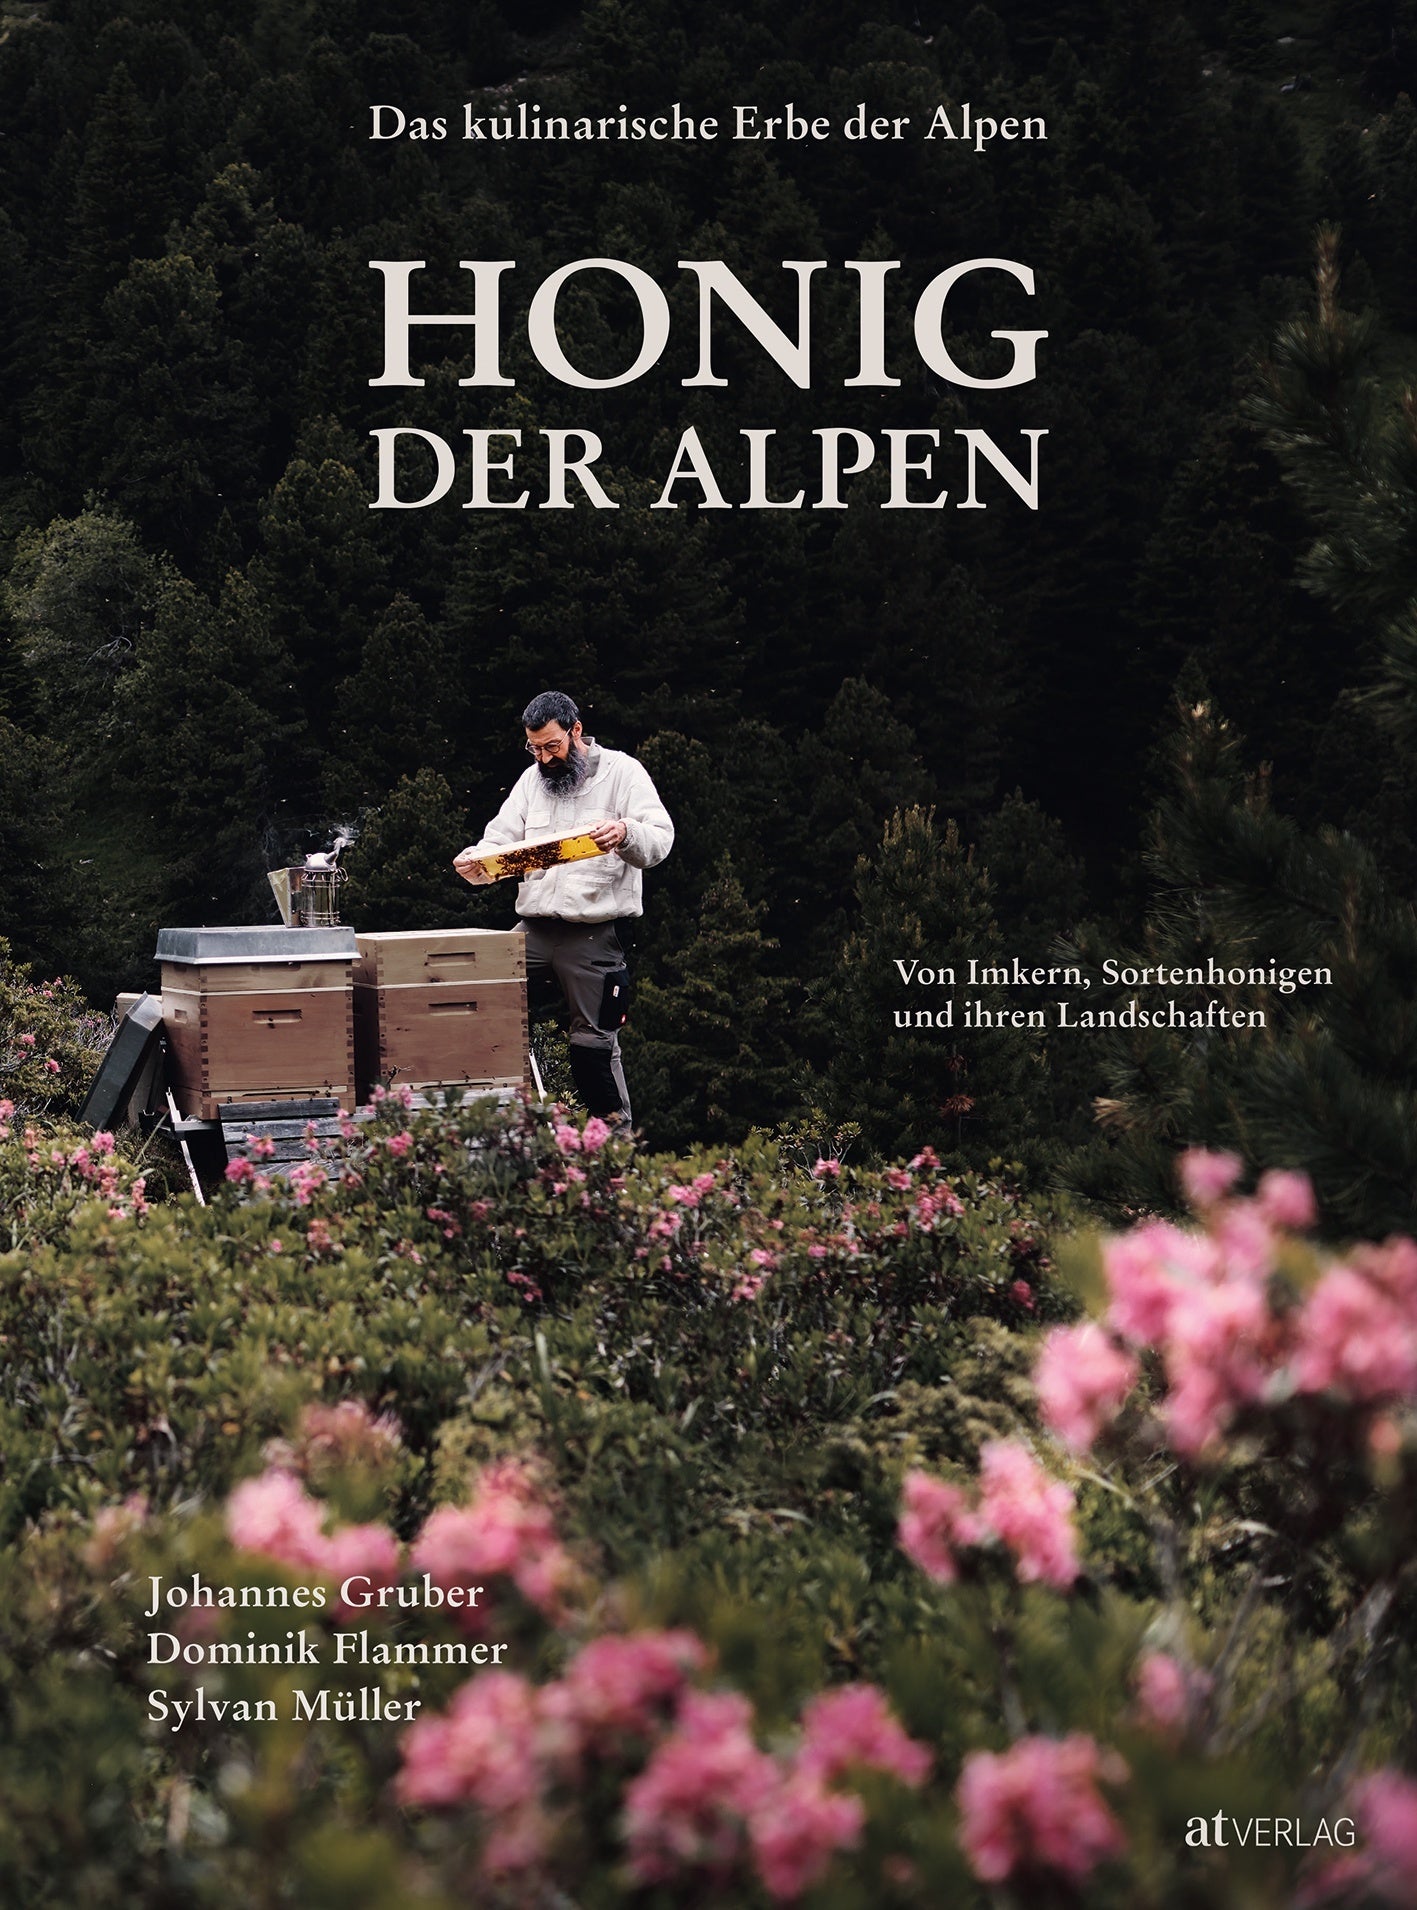 Coffret dégustation de miels monovariétales suisses – alpuris